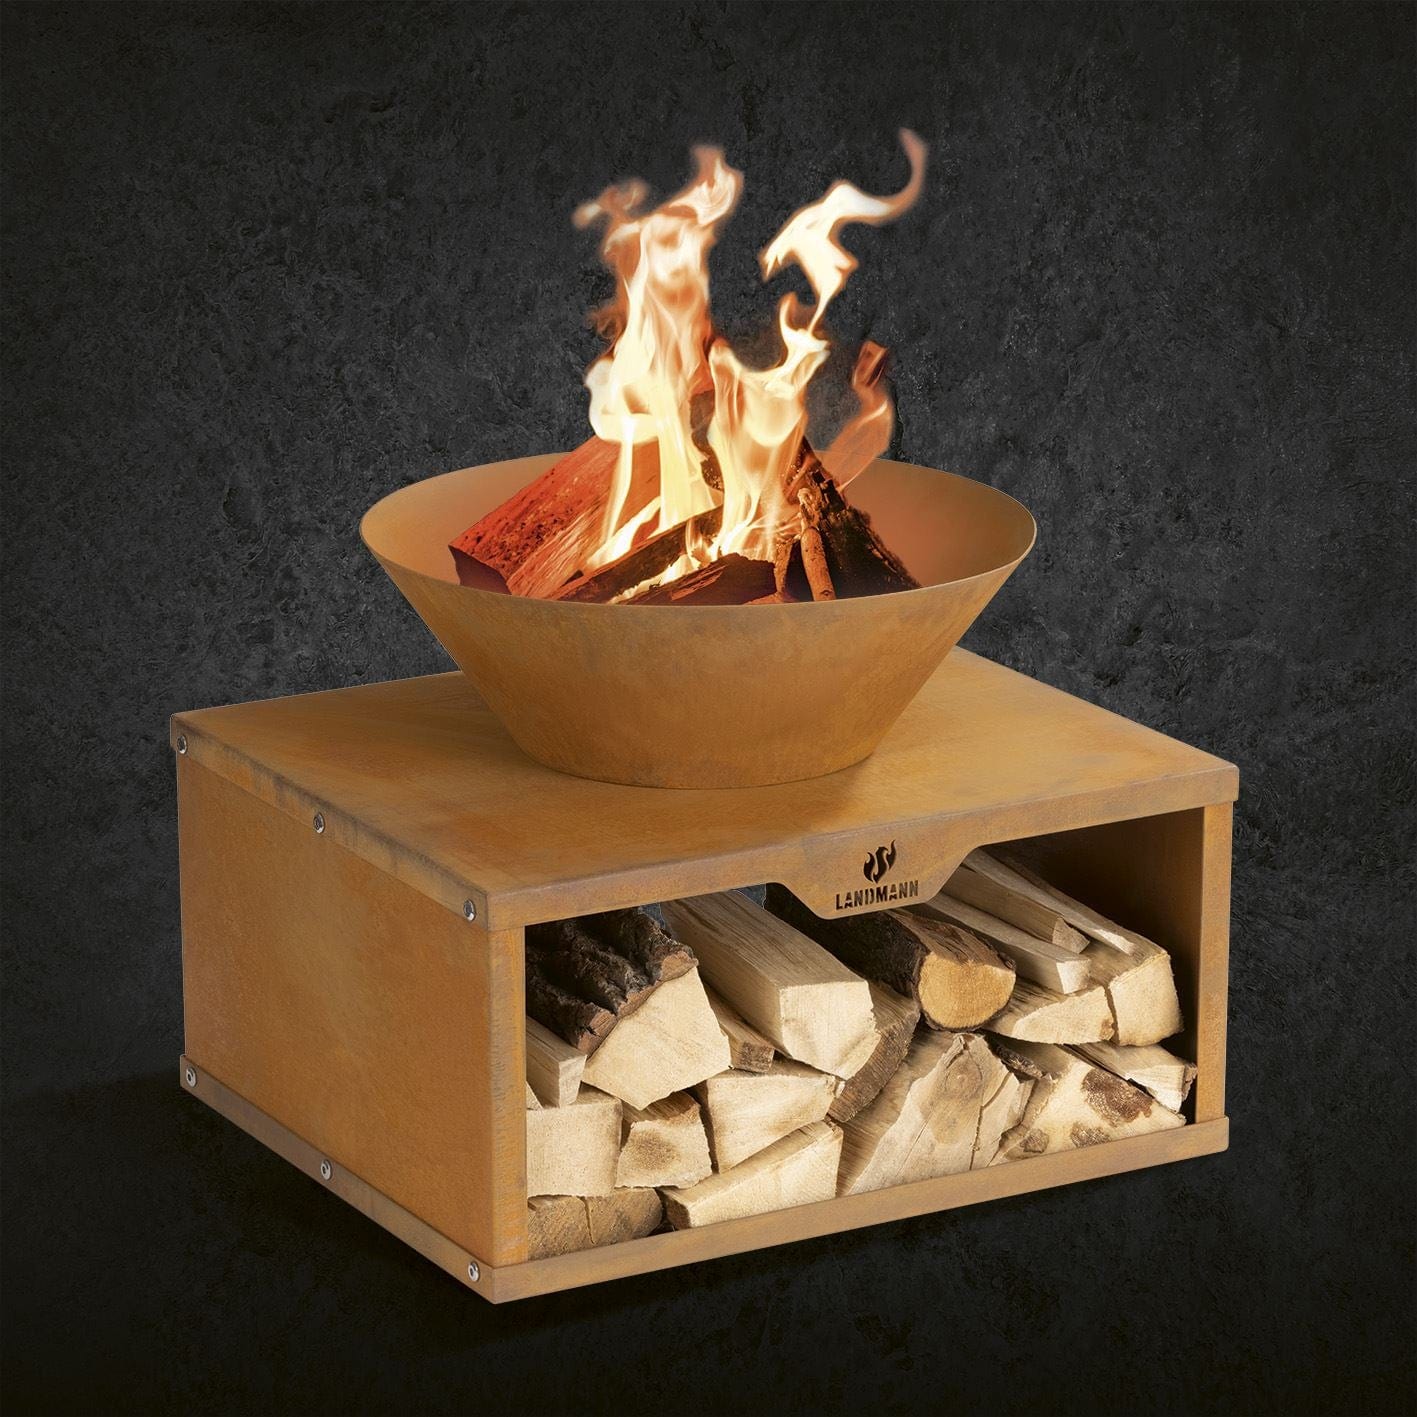 Firebowl with wood storage